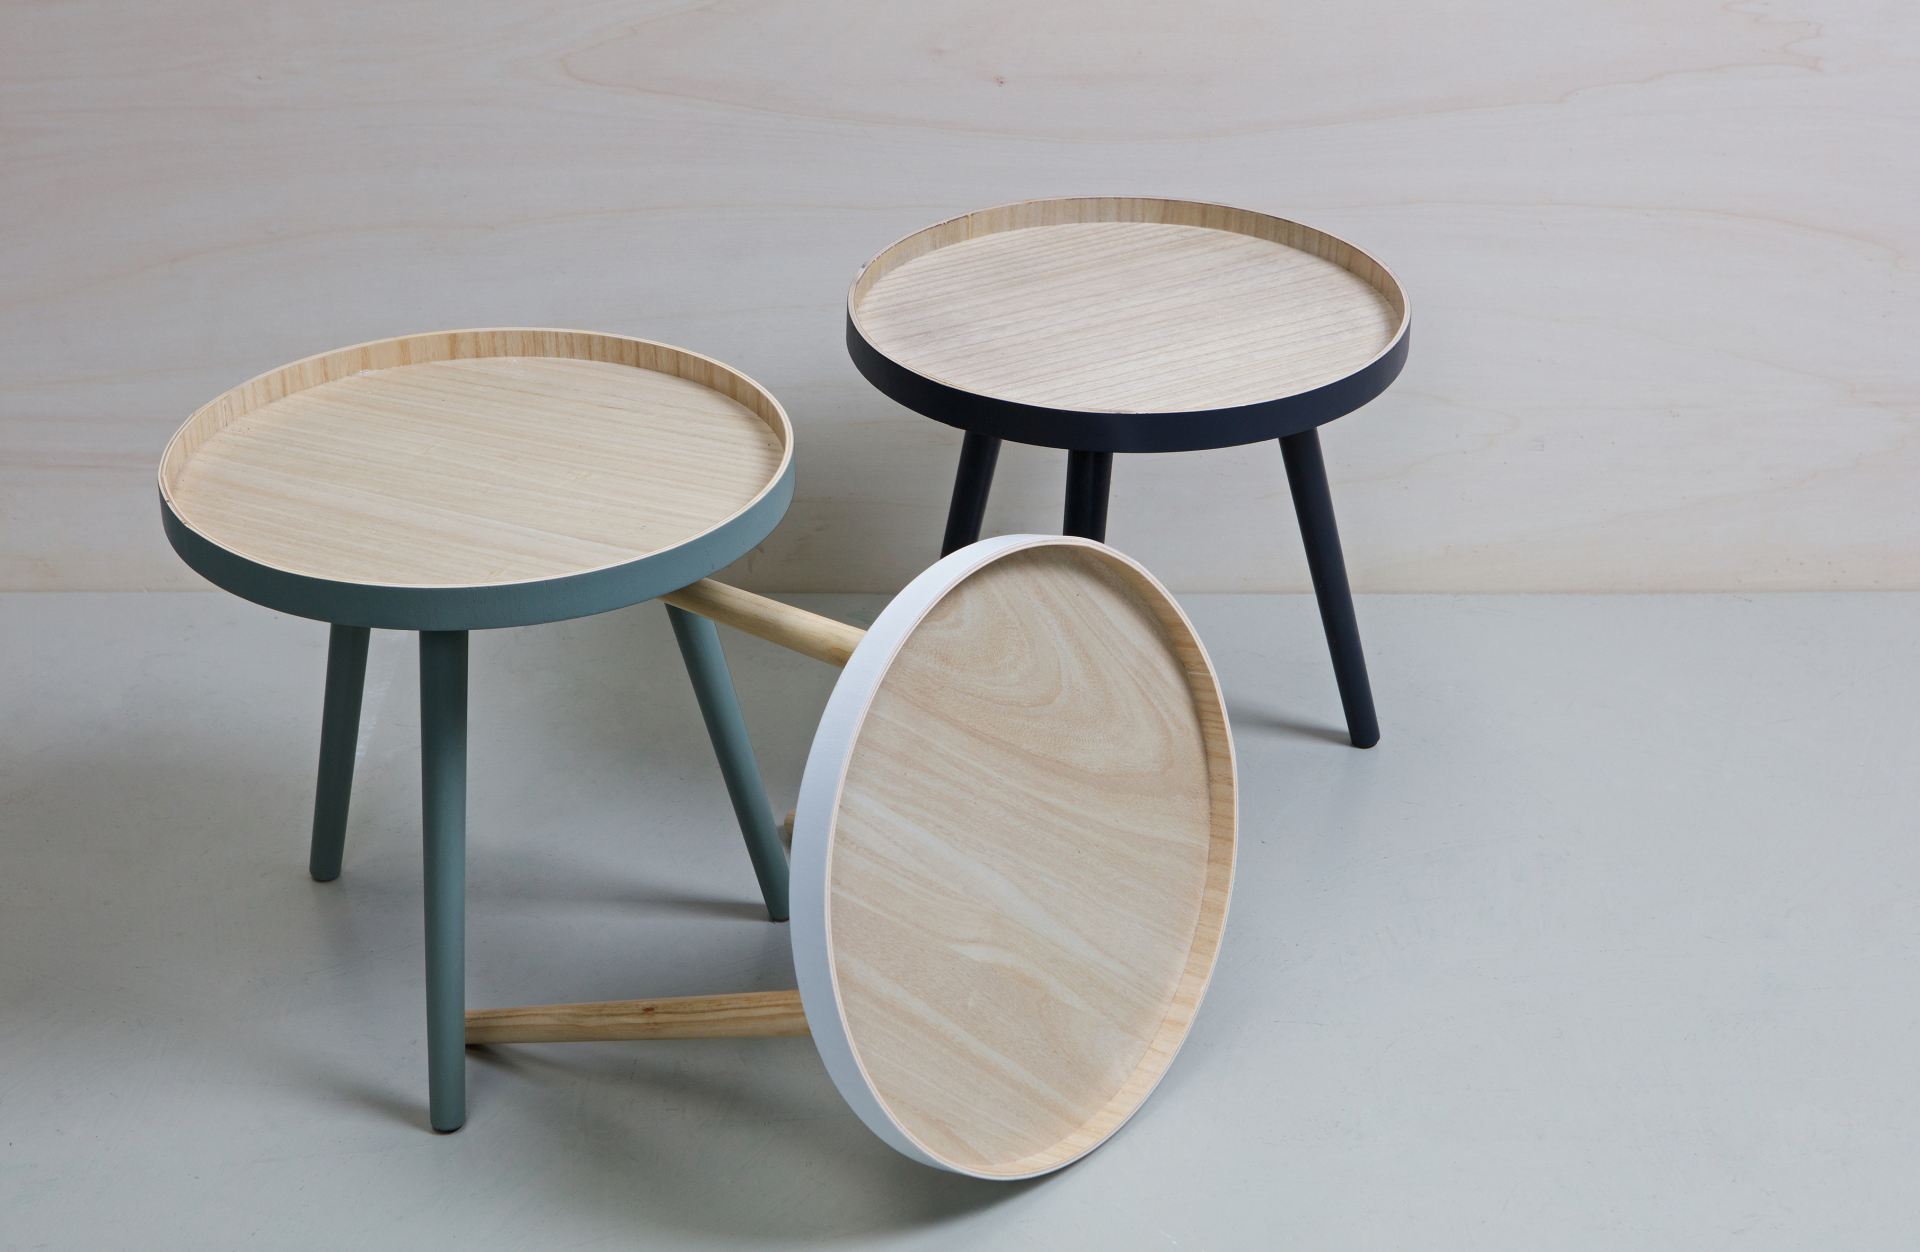 Der Couchtisch Sasha besitzt eine runde Form. Der Tisch ist in einem grünen Farbton, nur die Tischplatte ist natürlich gehalten und schafft einen schönen Kontrast.